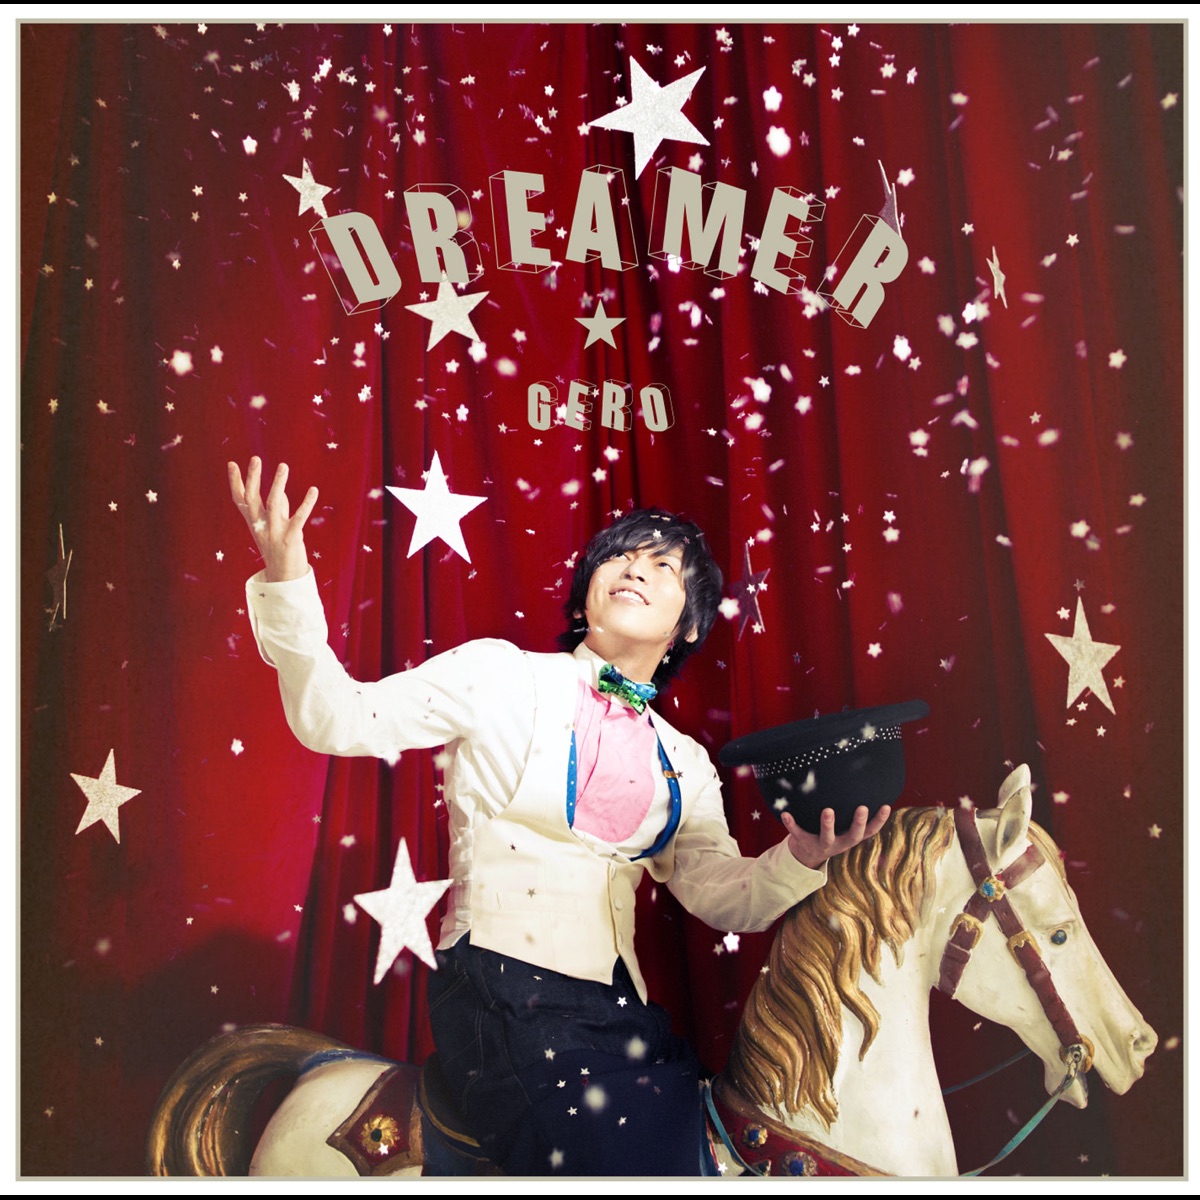 Cover art for『Gero - DREAMER』from the release『DREAMER』